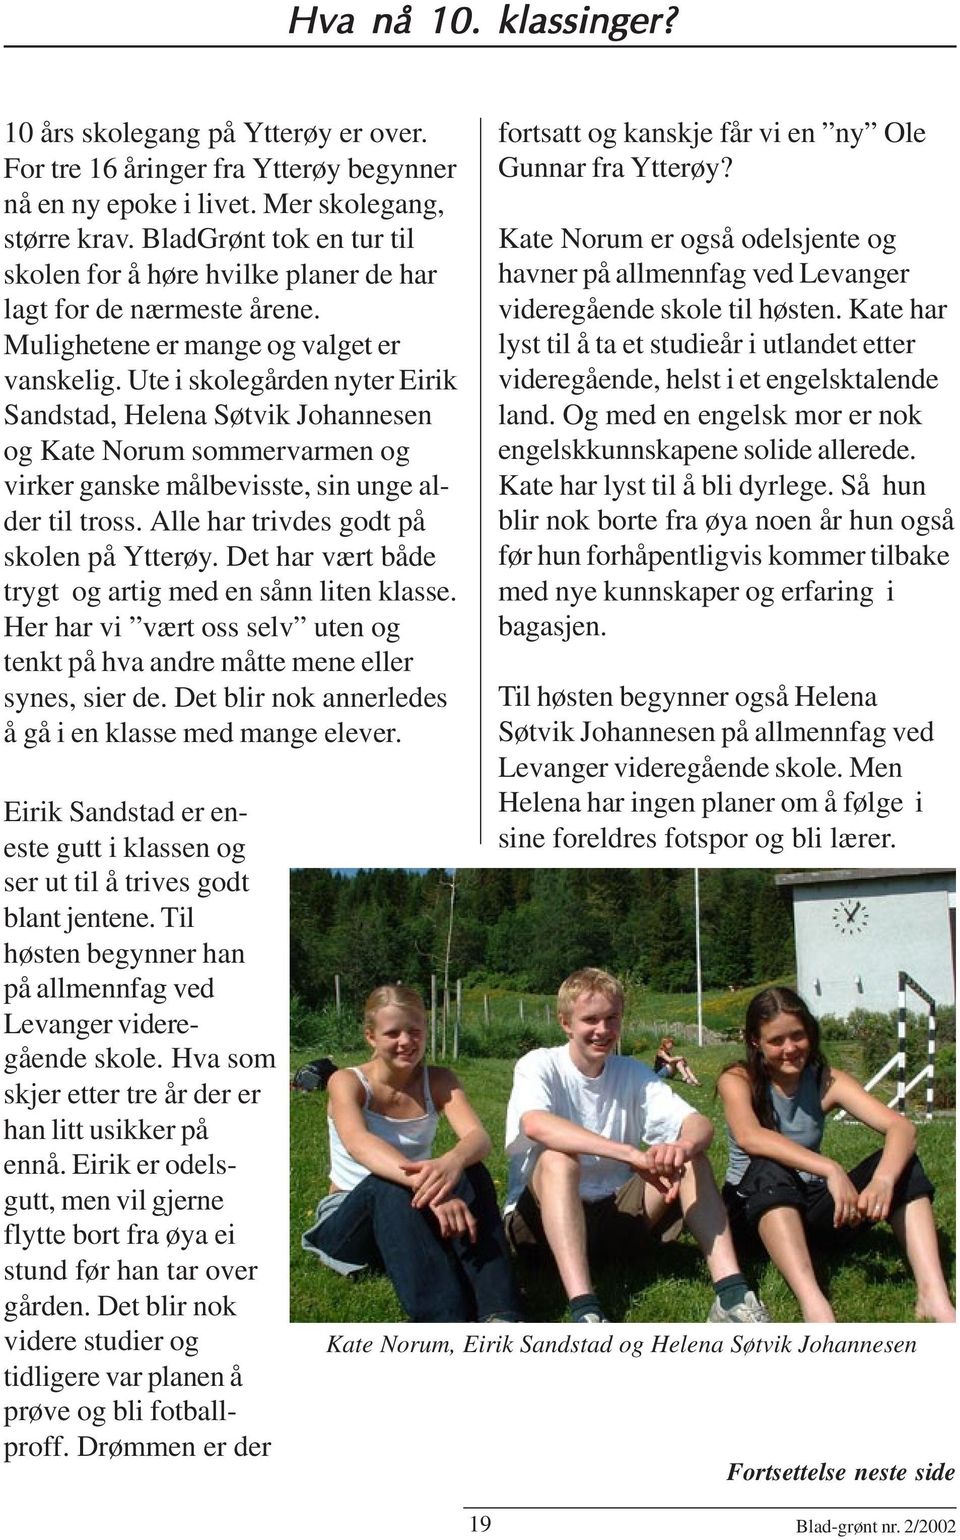 Ute i skolegården nyter Eirik Sandstad, Helena Søtvik Johannesen og Kate Norum sommervarmen og virker ganske målbevisste, sin unge alder til tross. Alle har trivdes godt på skolen på Ytterøy.